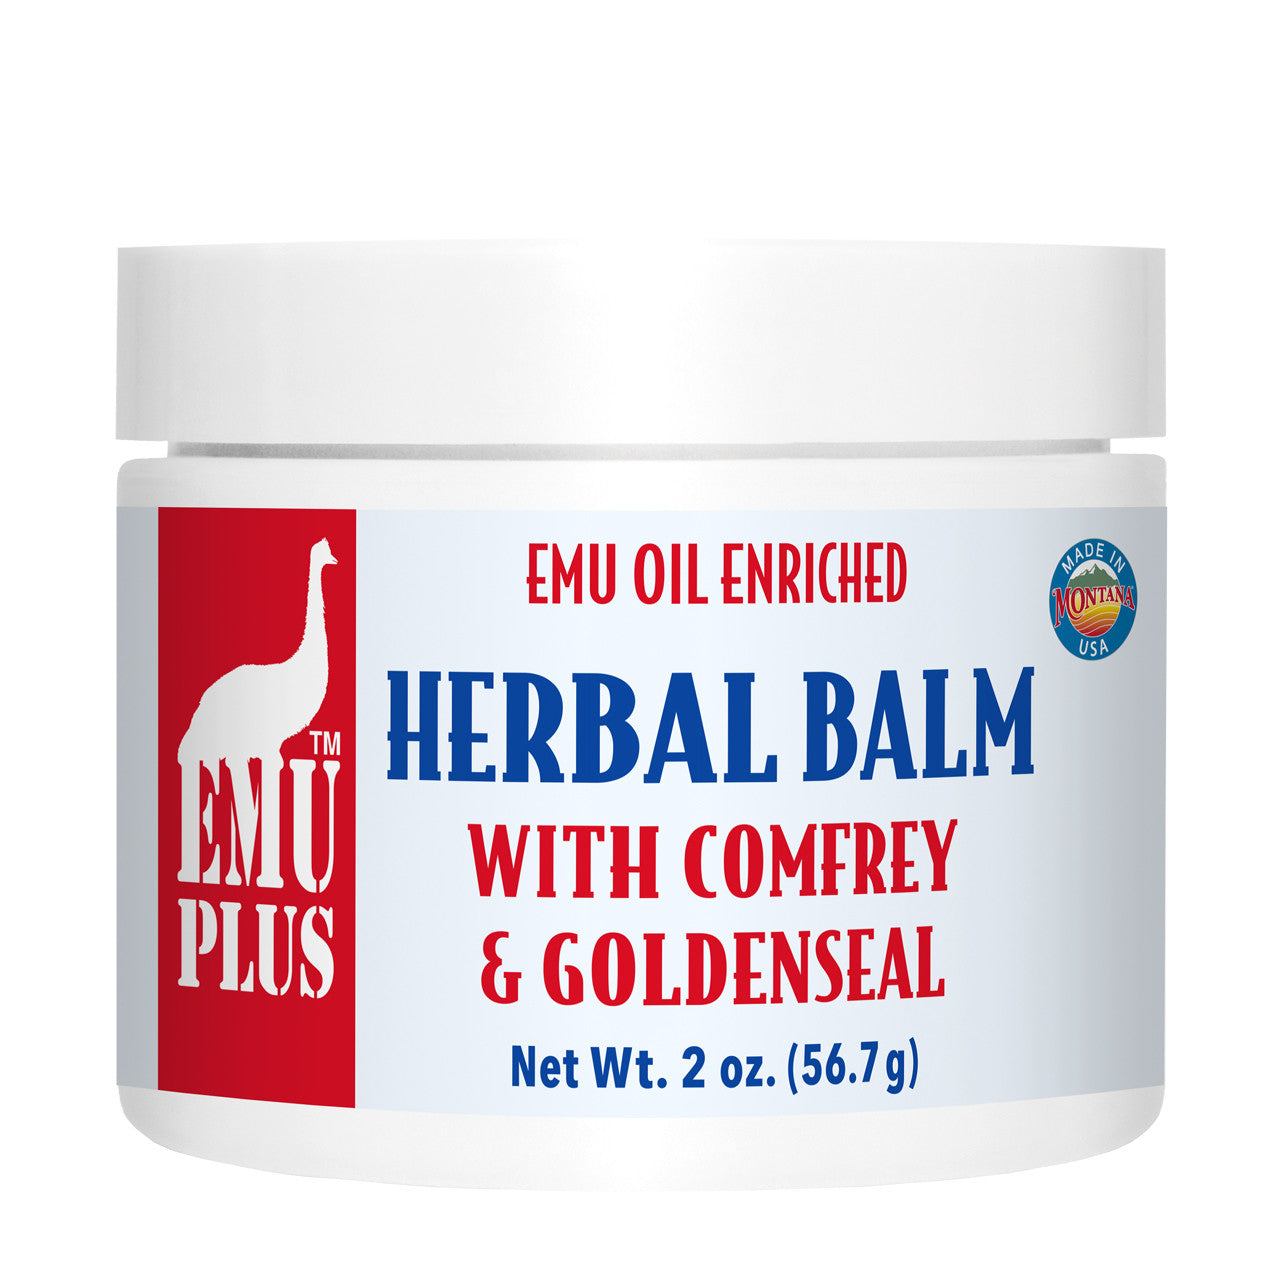 EMUplus™ Herbal Balm with Comfrey & Goldenseal